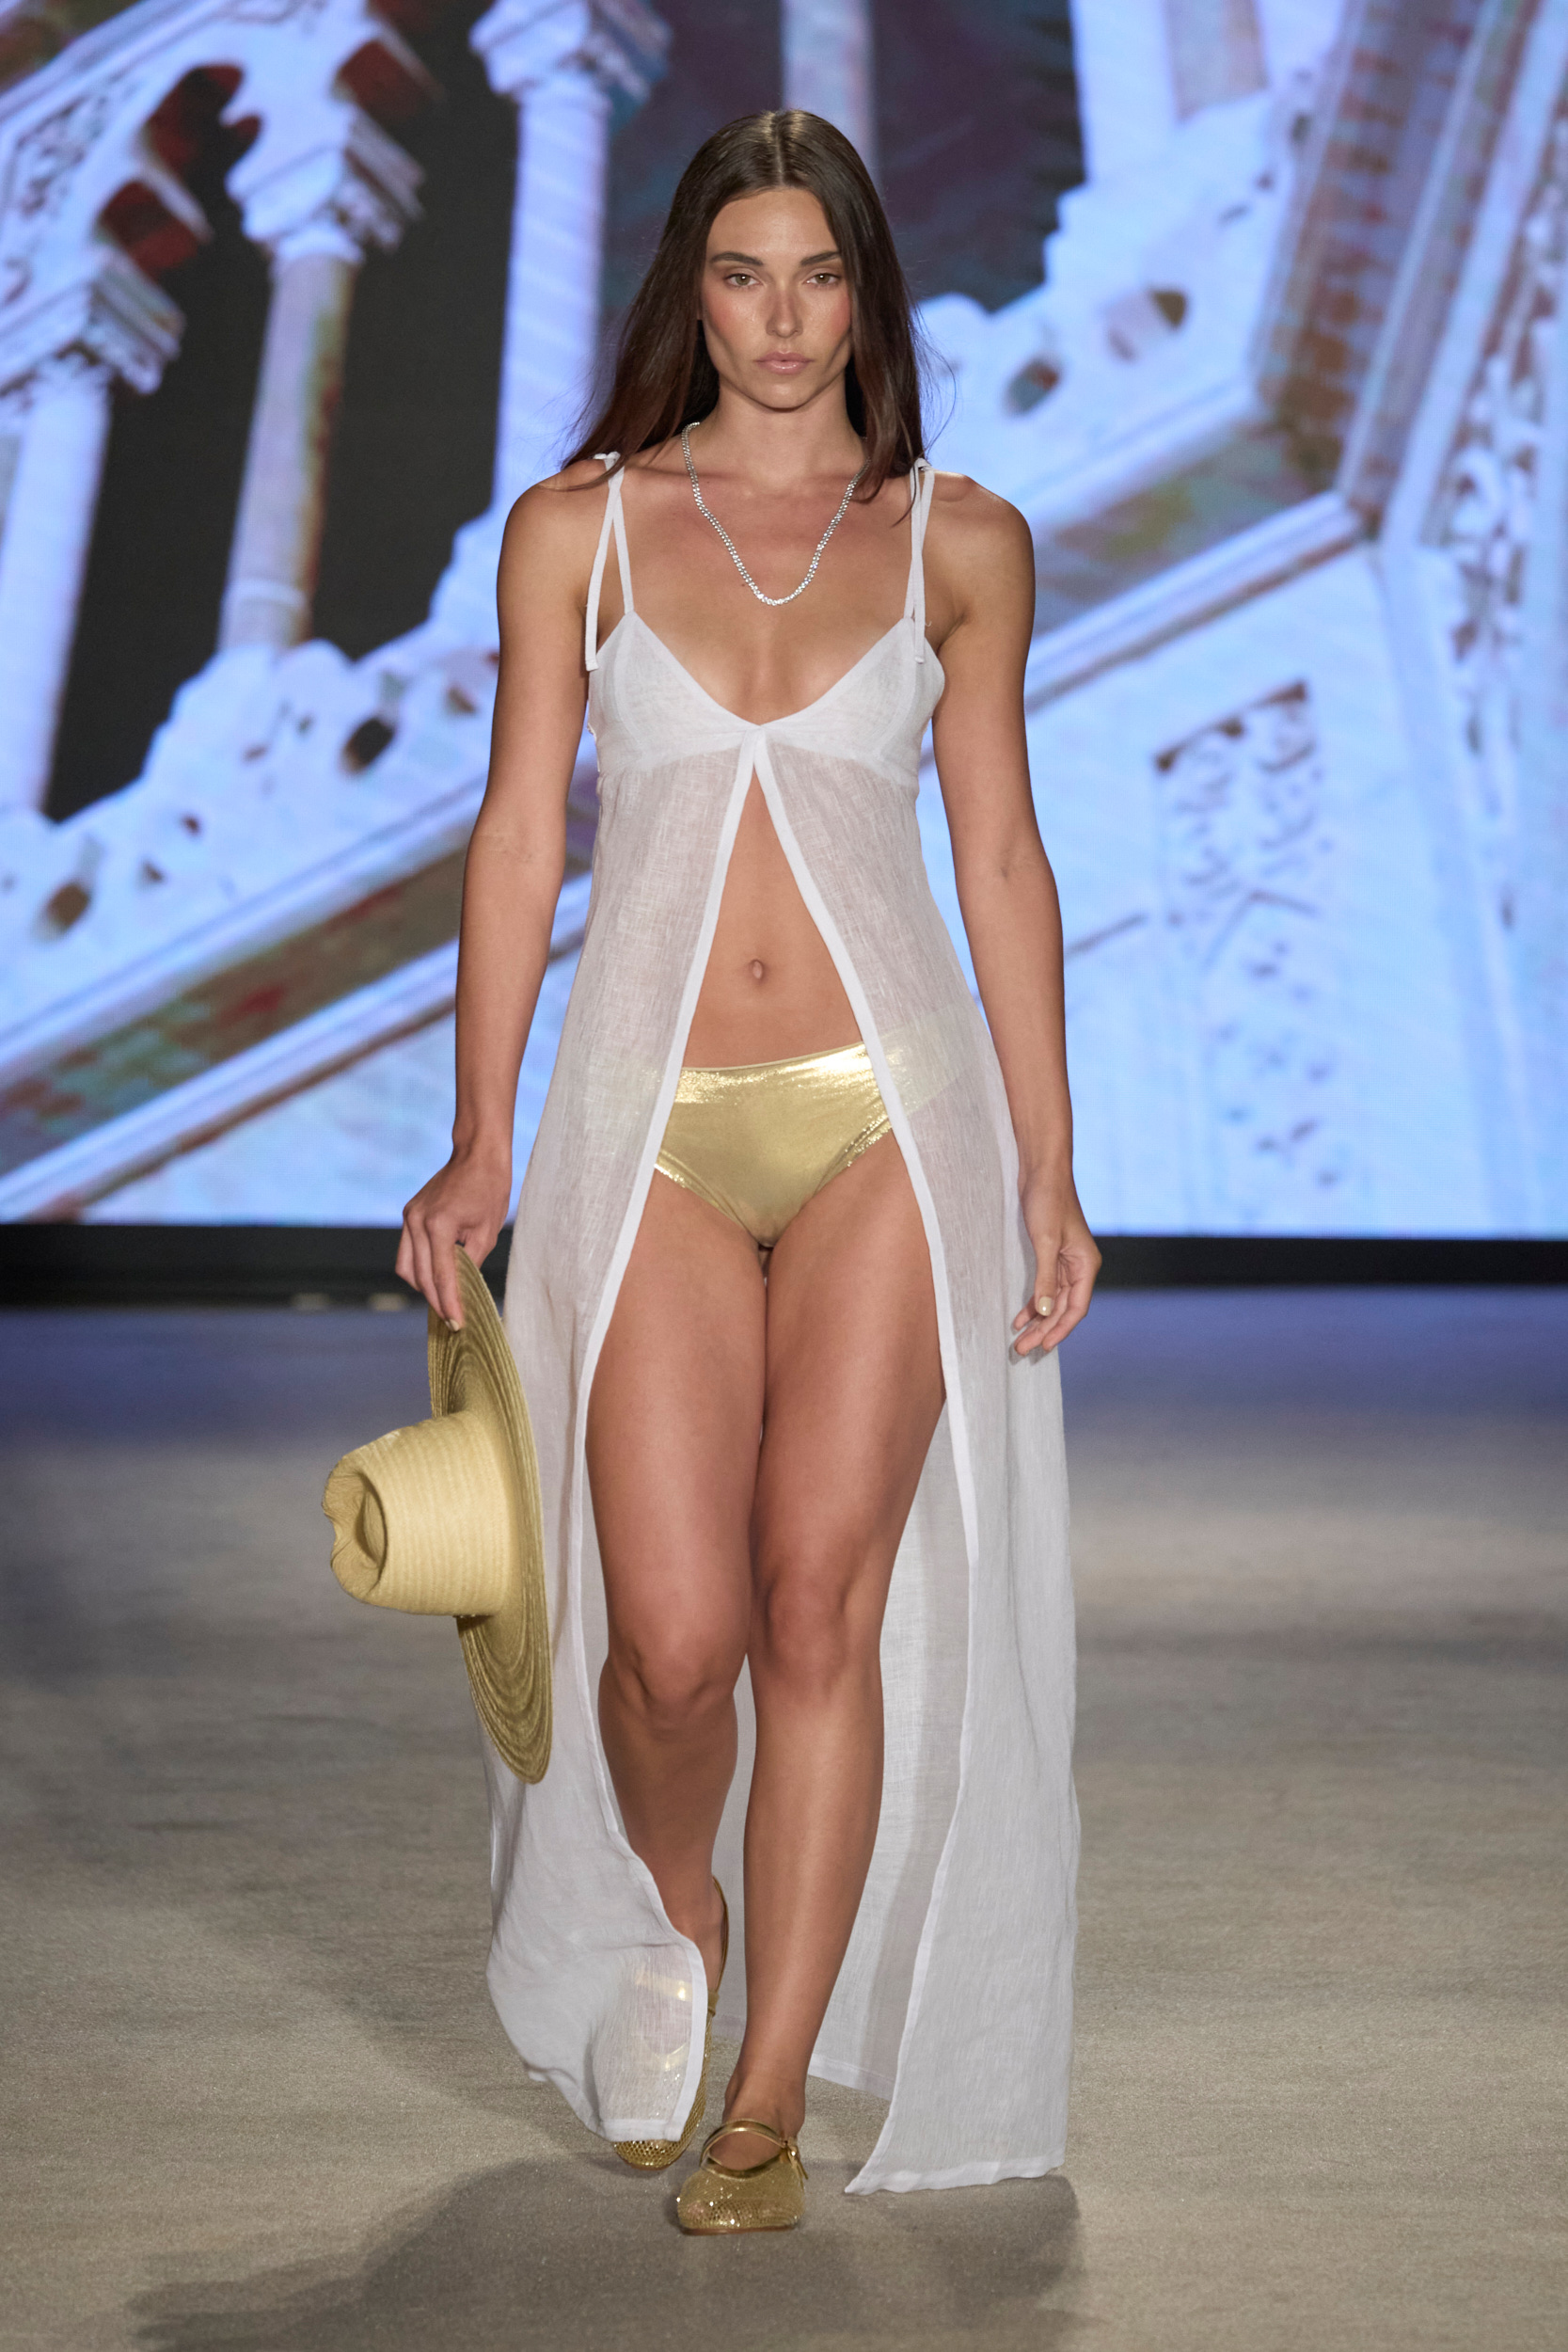 Adriana Fernandez  Spring 2025 Swimwear Fashion Show 